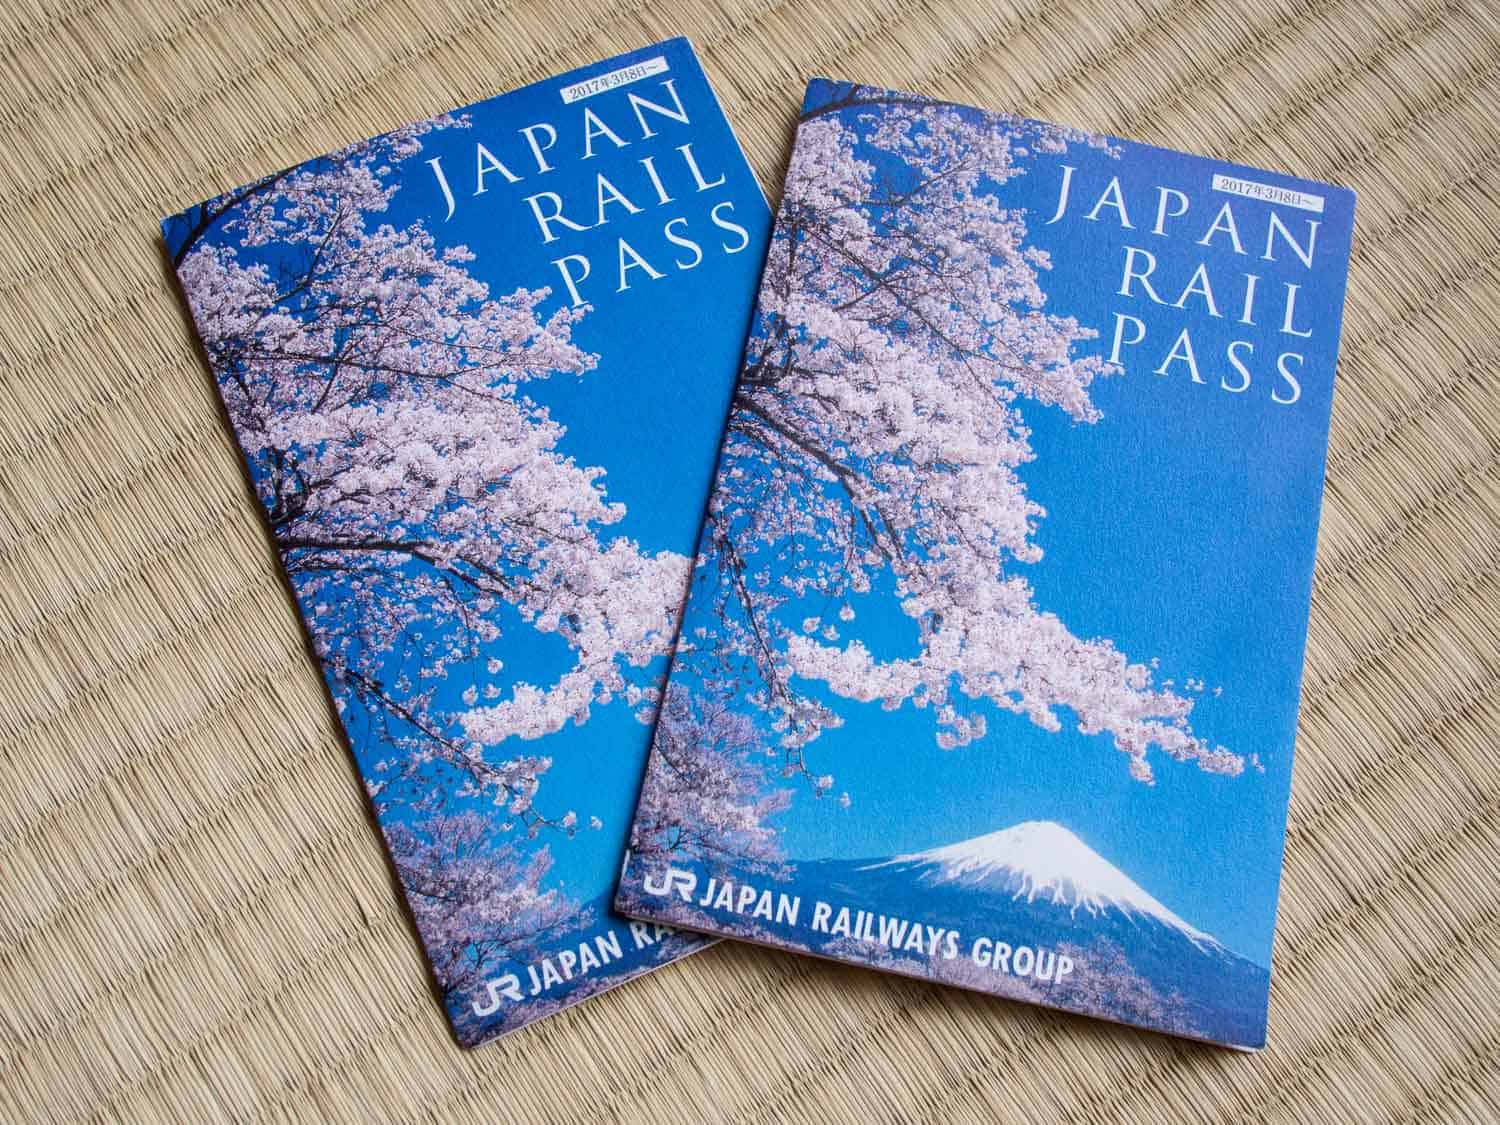 Two Japan rail pass